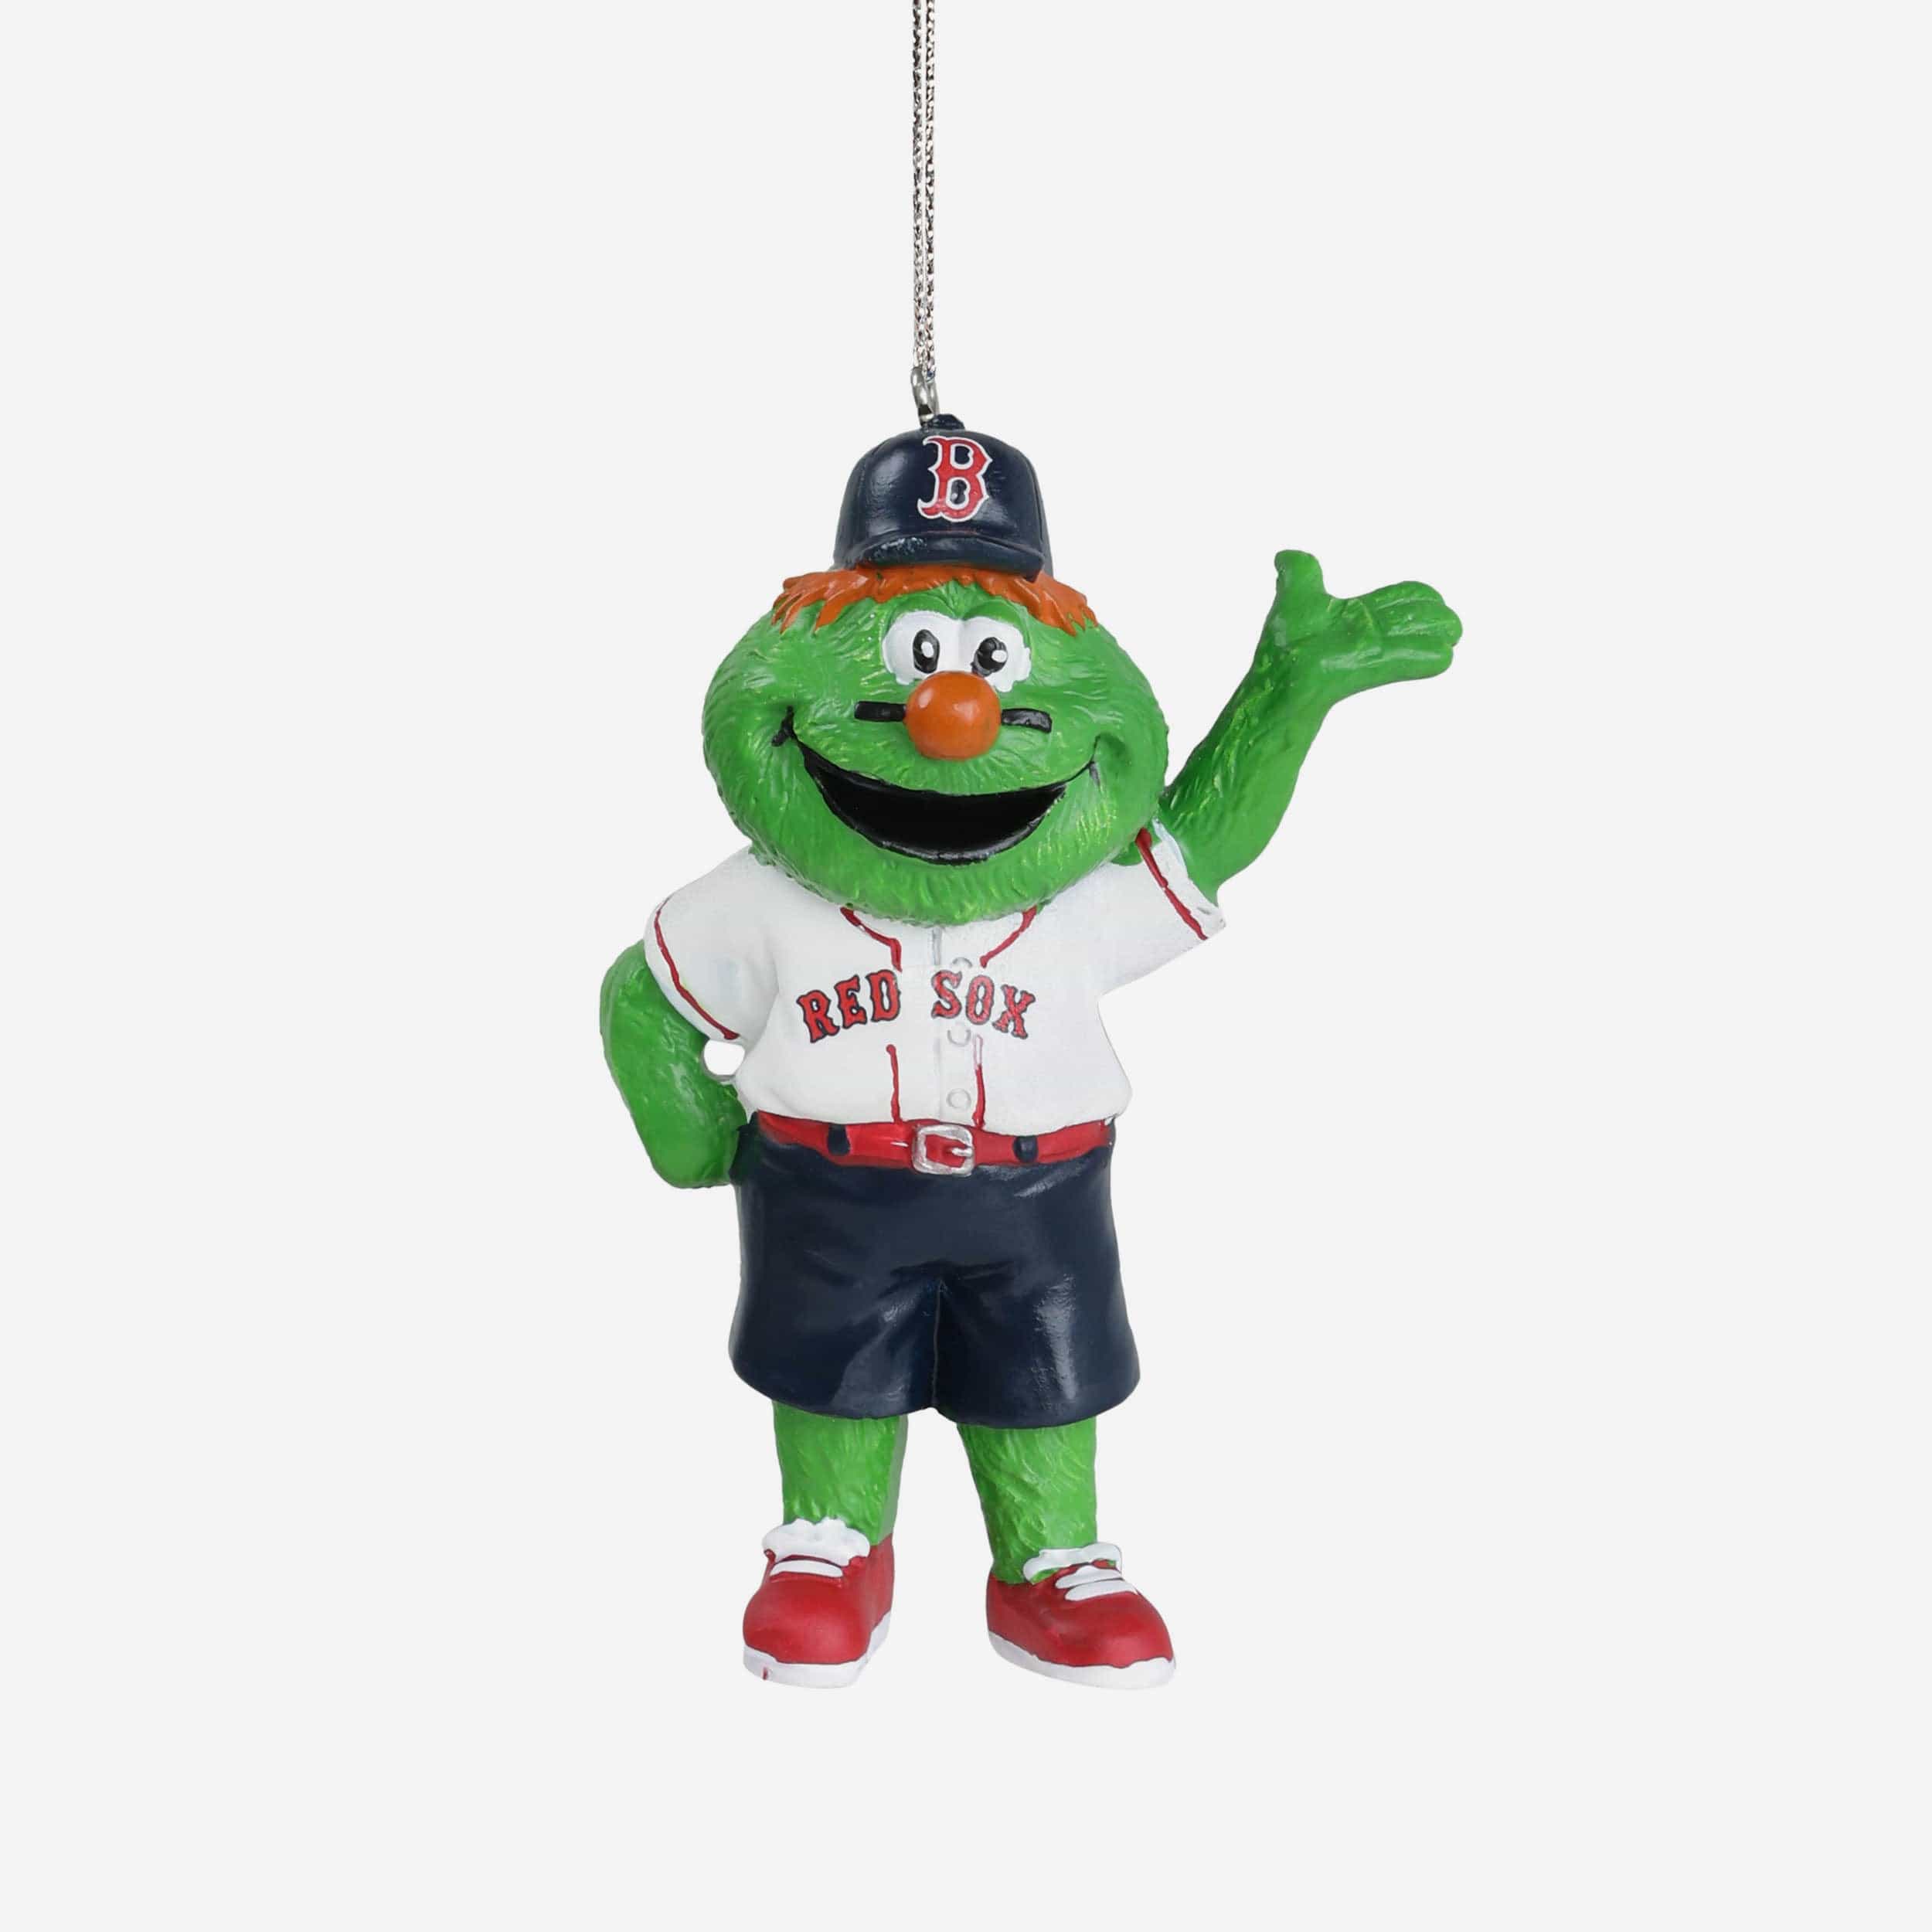 Wally Red Sox Mascot Costumes with no Shirt